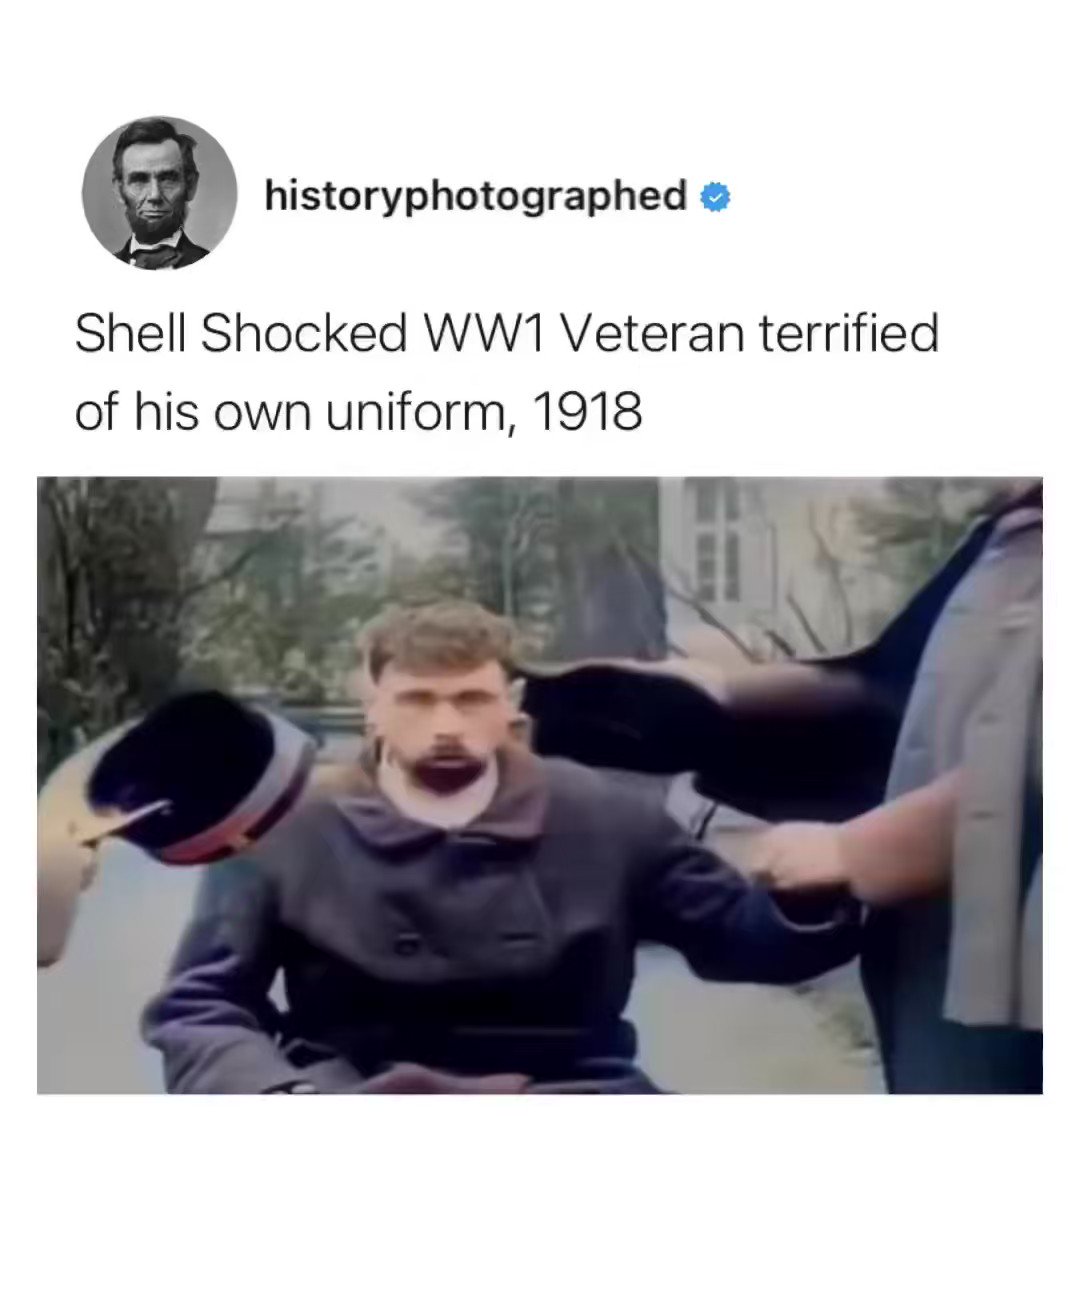 Shell shock : r/memes